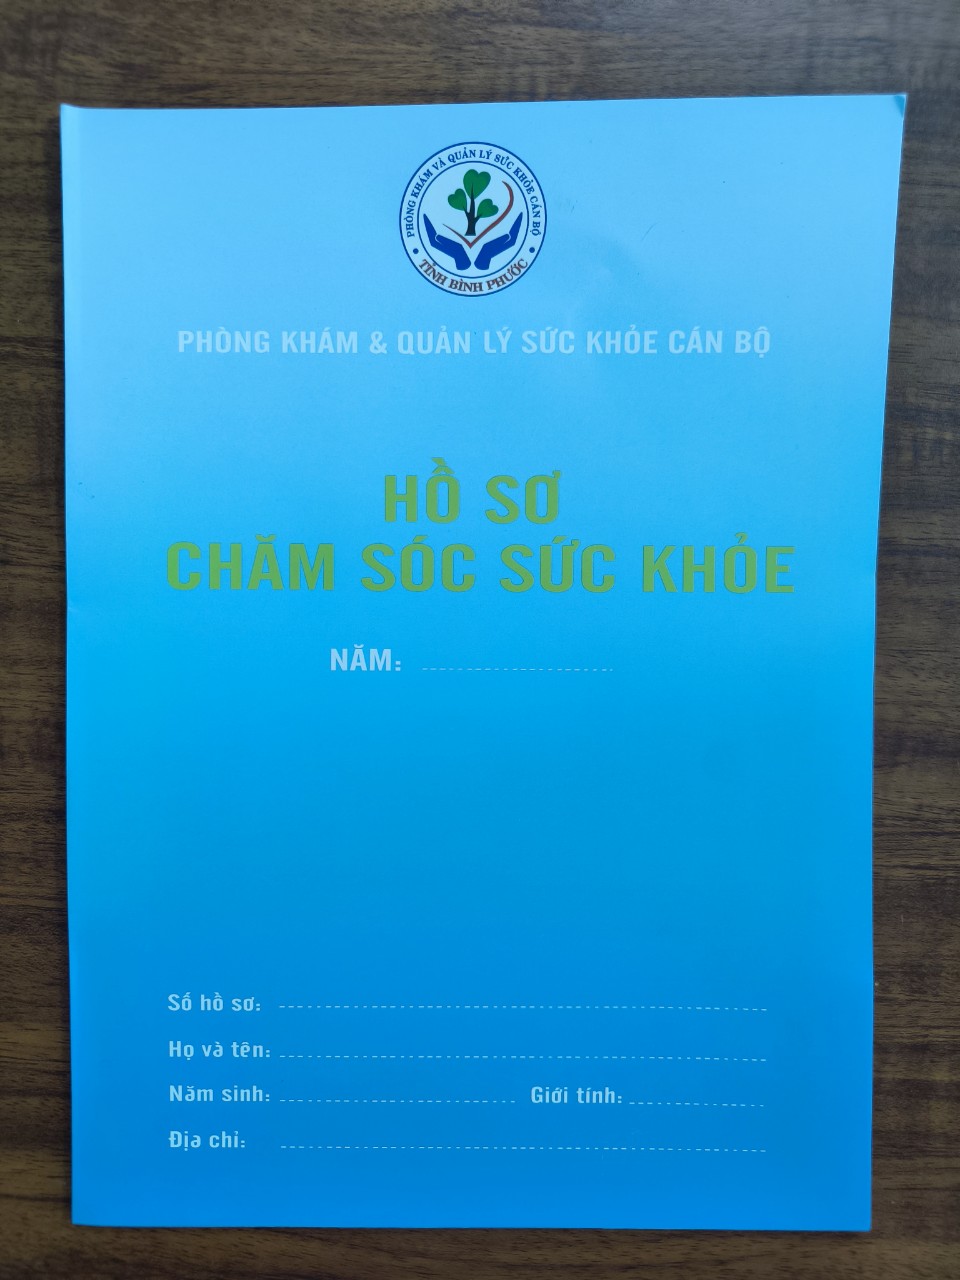 Ban bảo vệ chăm sóc sức khoẻ cán bộ tỉnh Bình Phước Mời báo giá